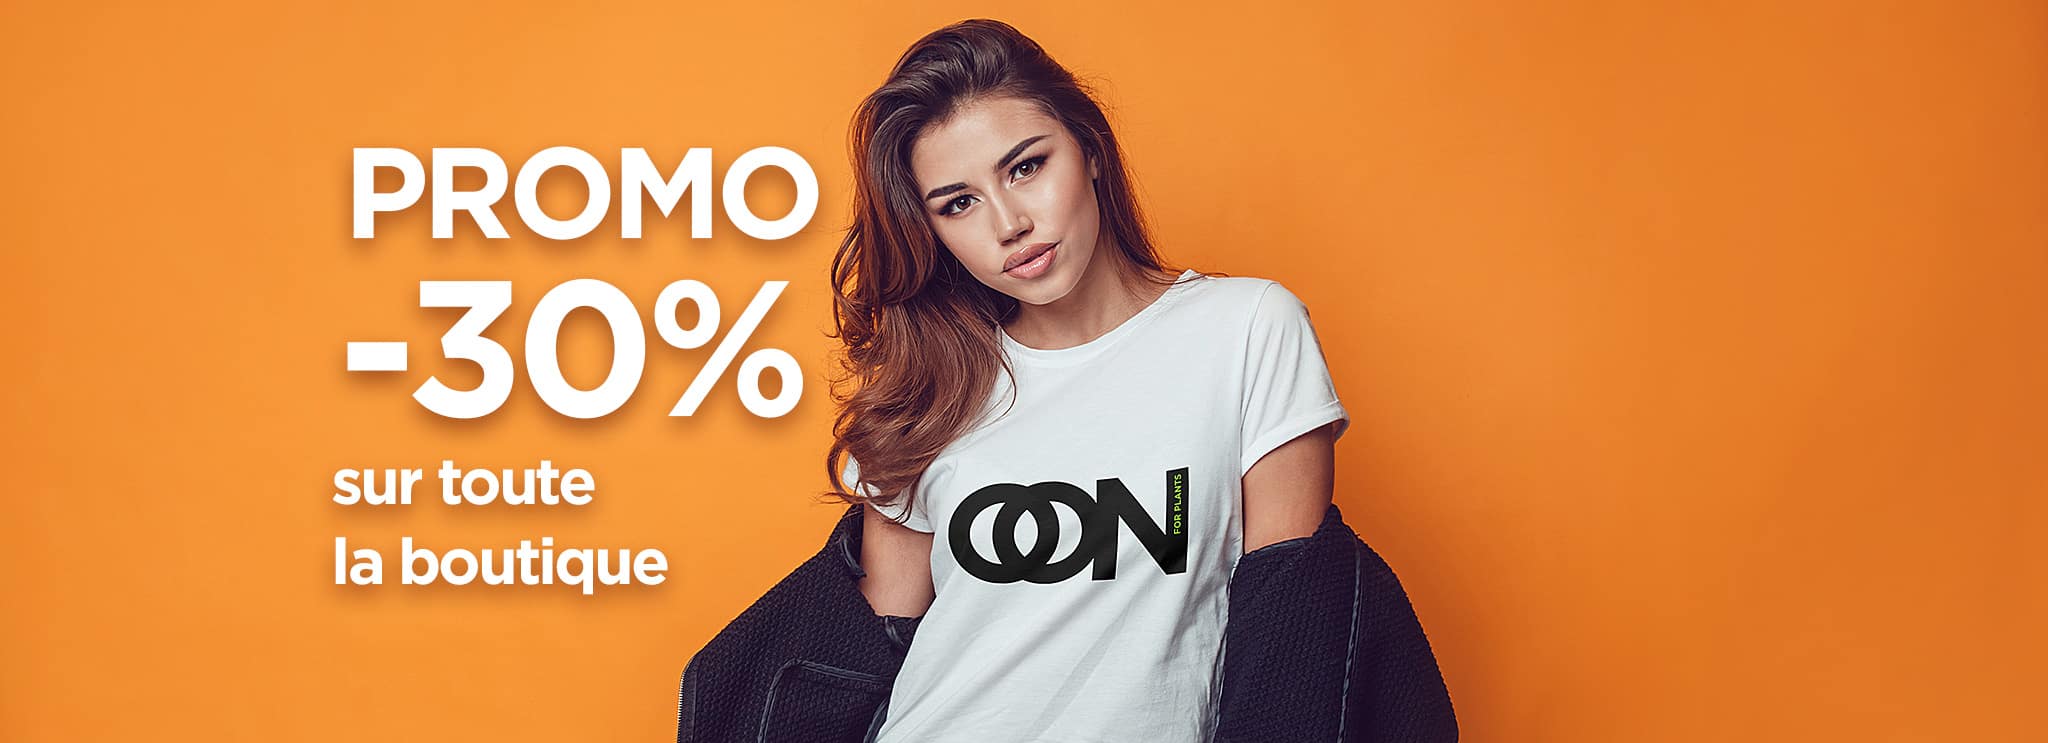 vêtements éthique nearooana - promotion -30% sur toute la boutique en ligne - version dekstop